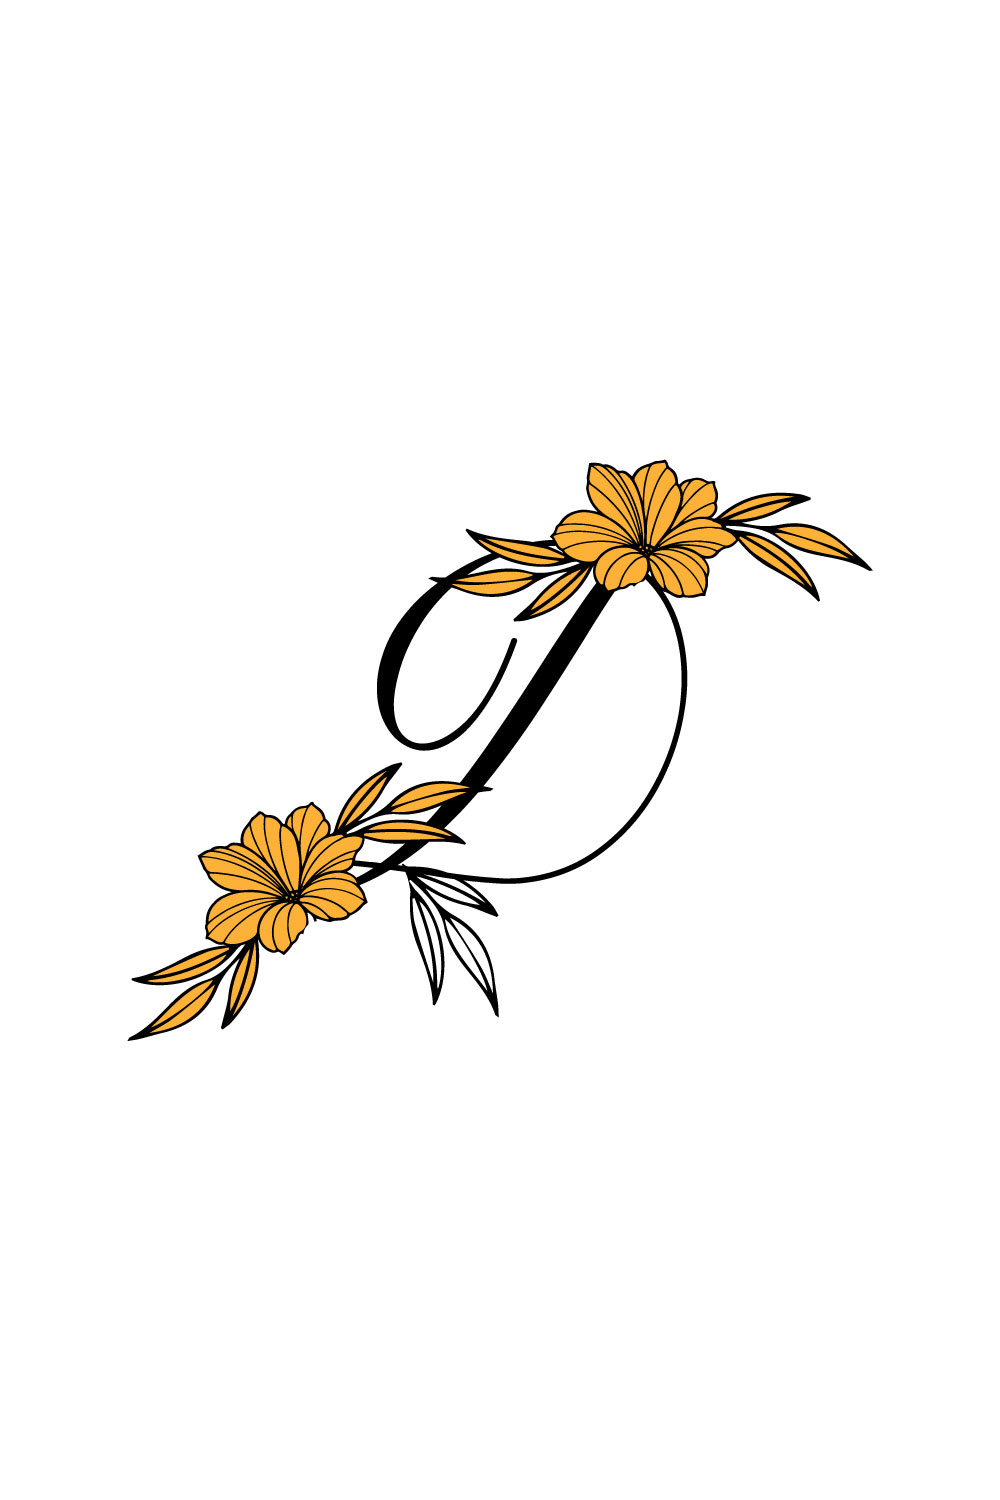 Free D Letter Flower Logo pinterest preview image.